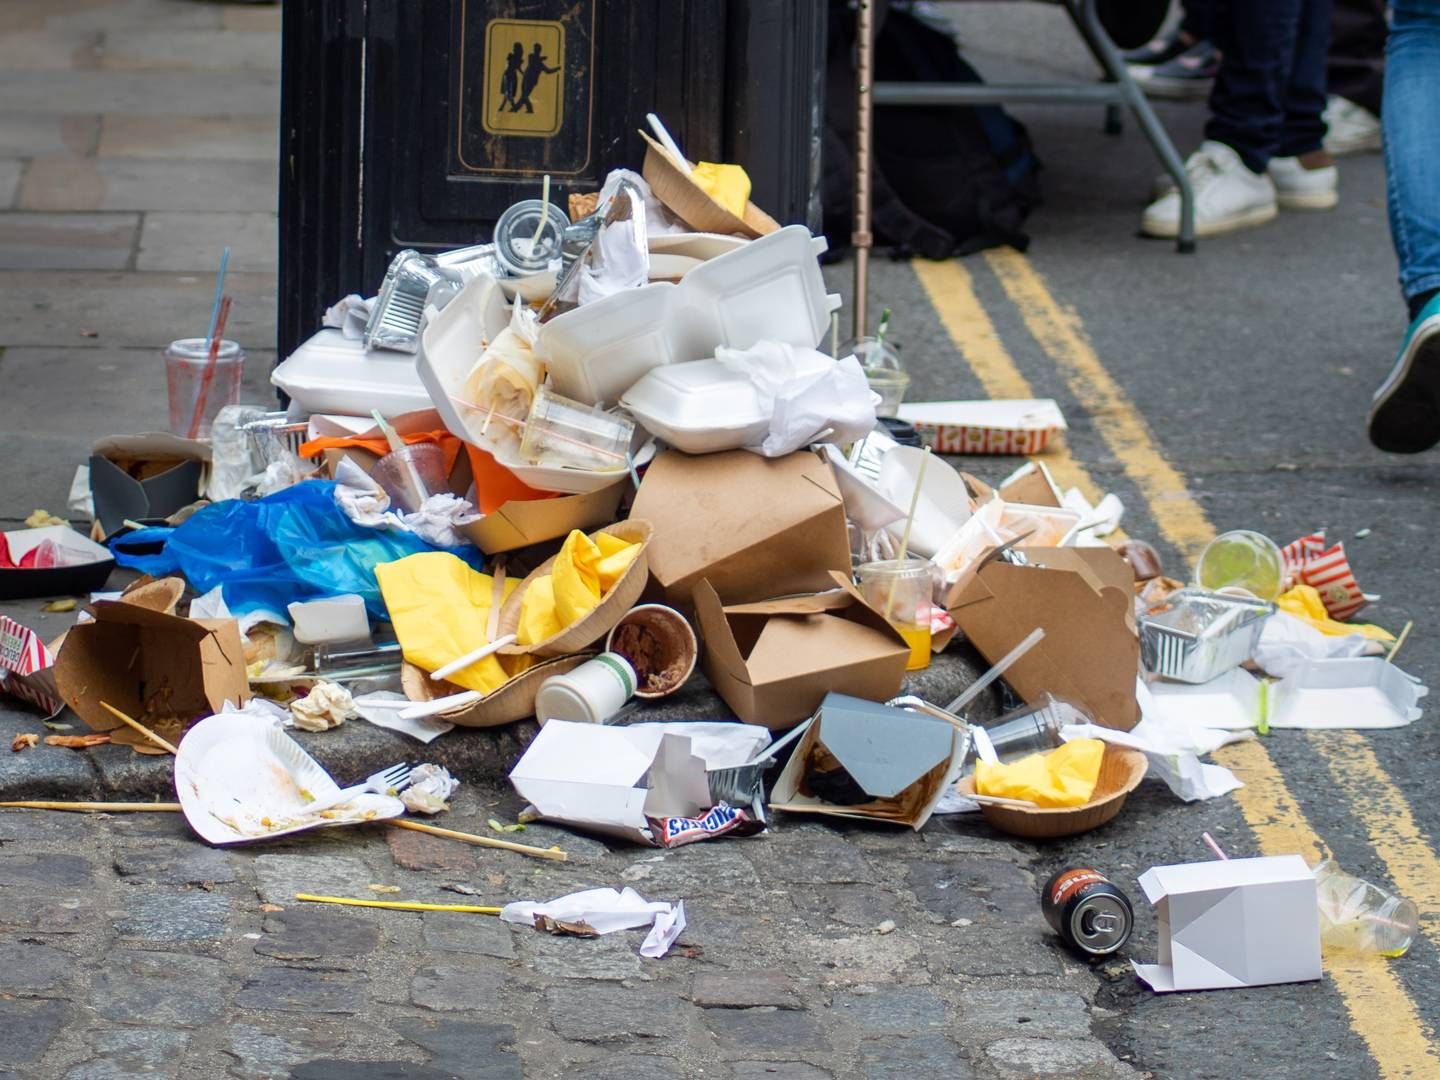 Takeaway-emballage skaber enorme mængder affald. | Foto: Plastic Change / Pr